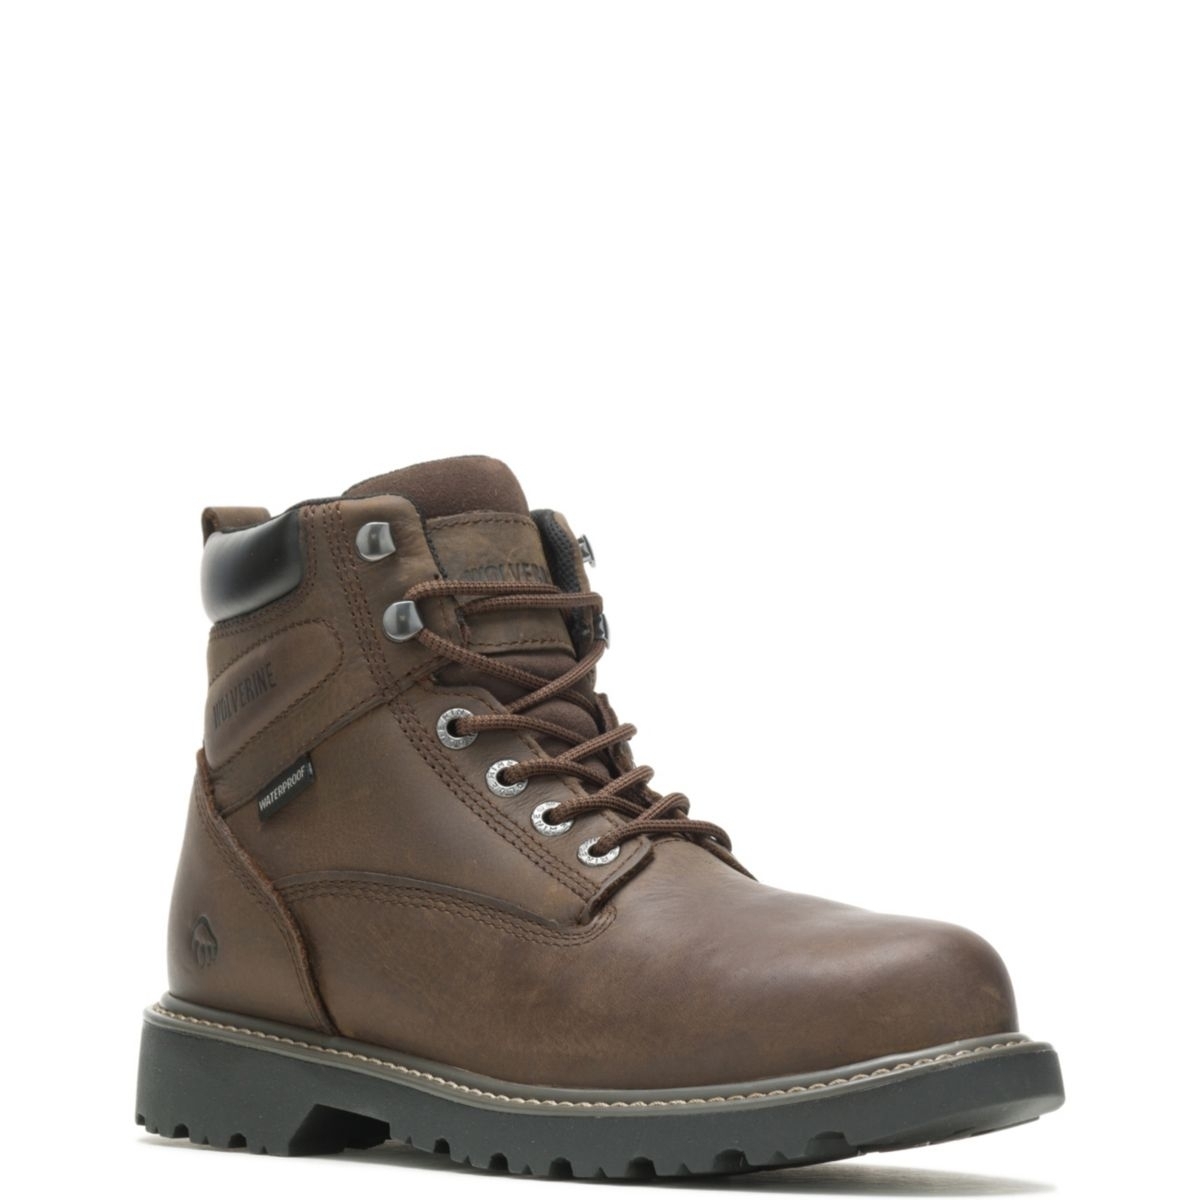 WOLVERINE Men's Floorhand 6 Waterproof Steel Toe Work Boot Dark Brown - W10633 DARK BROWN - DARK BROWN, 13 X-Wide